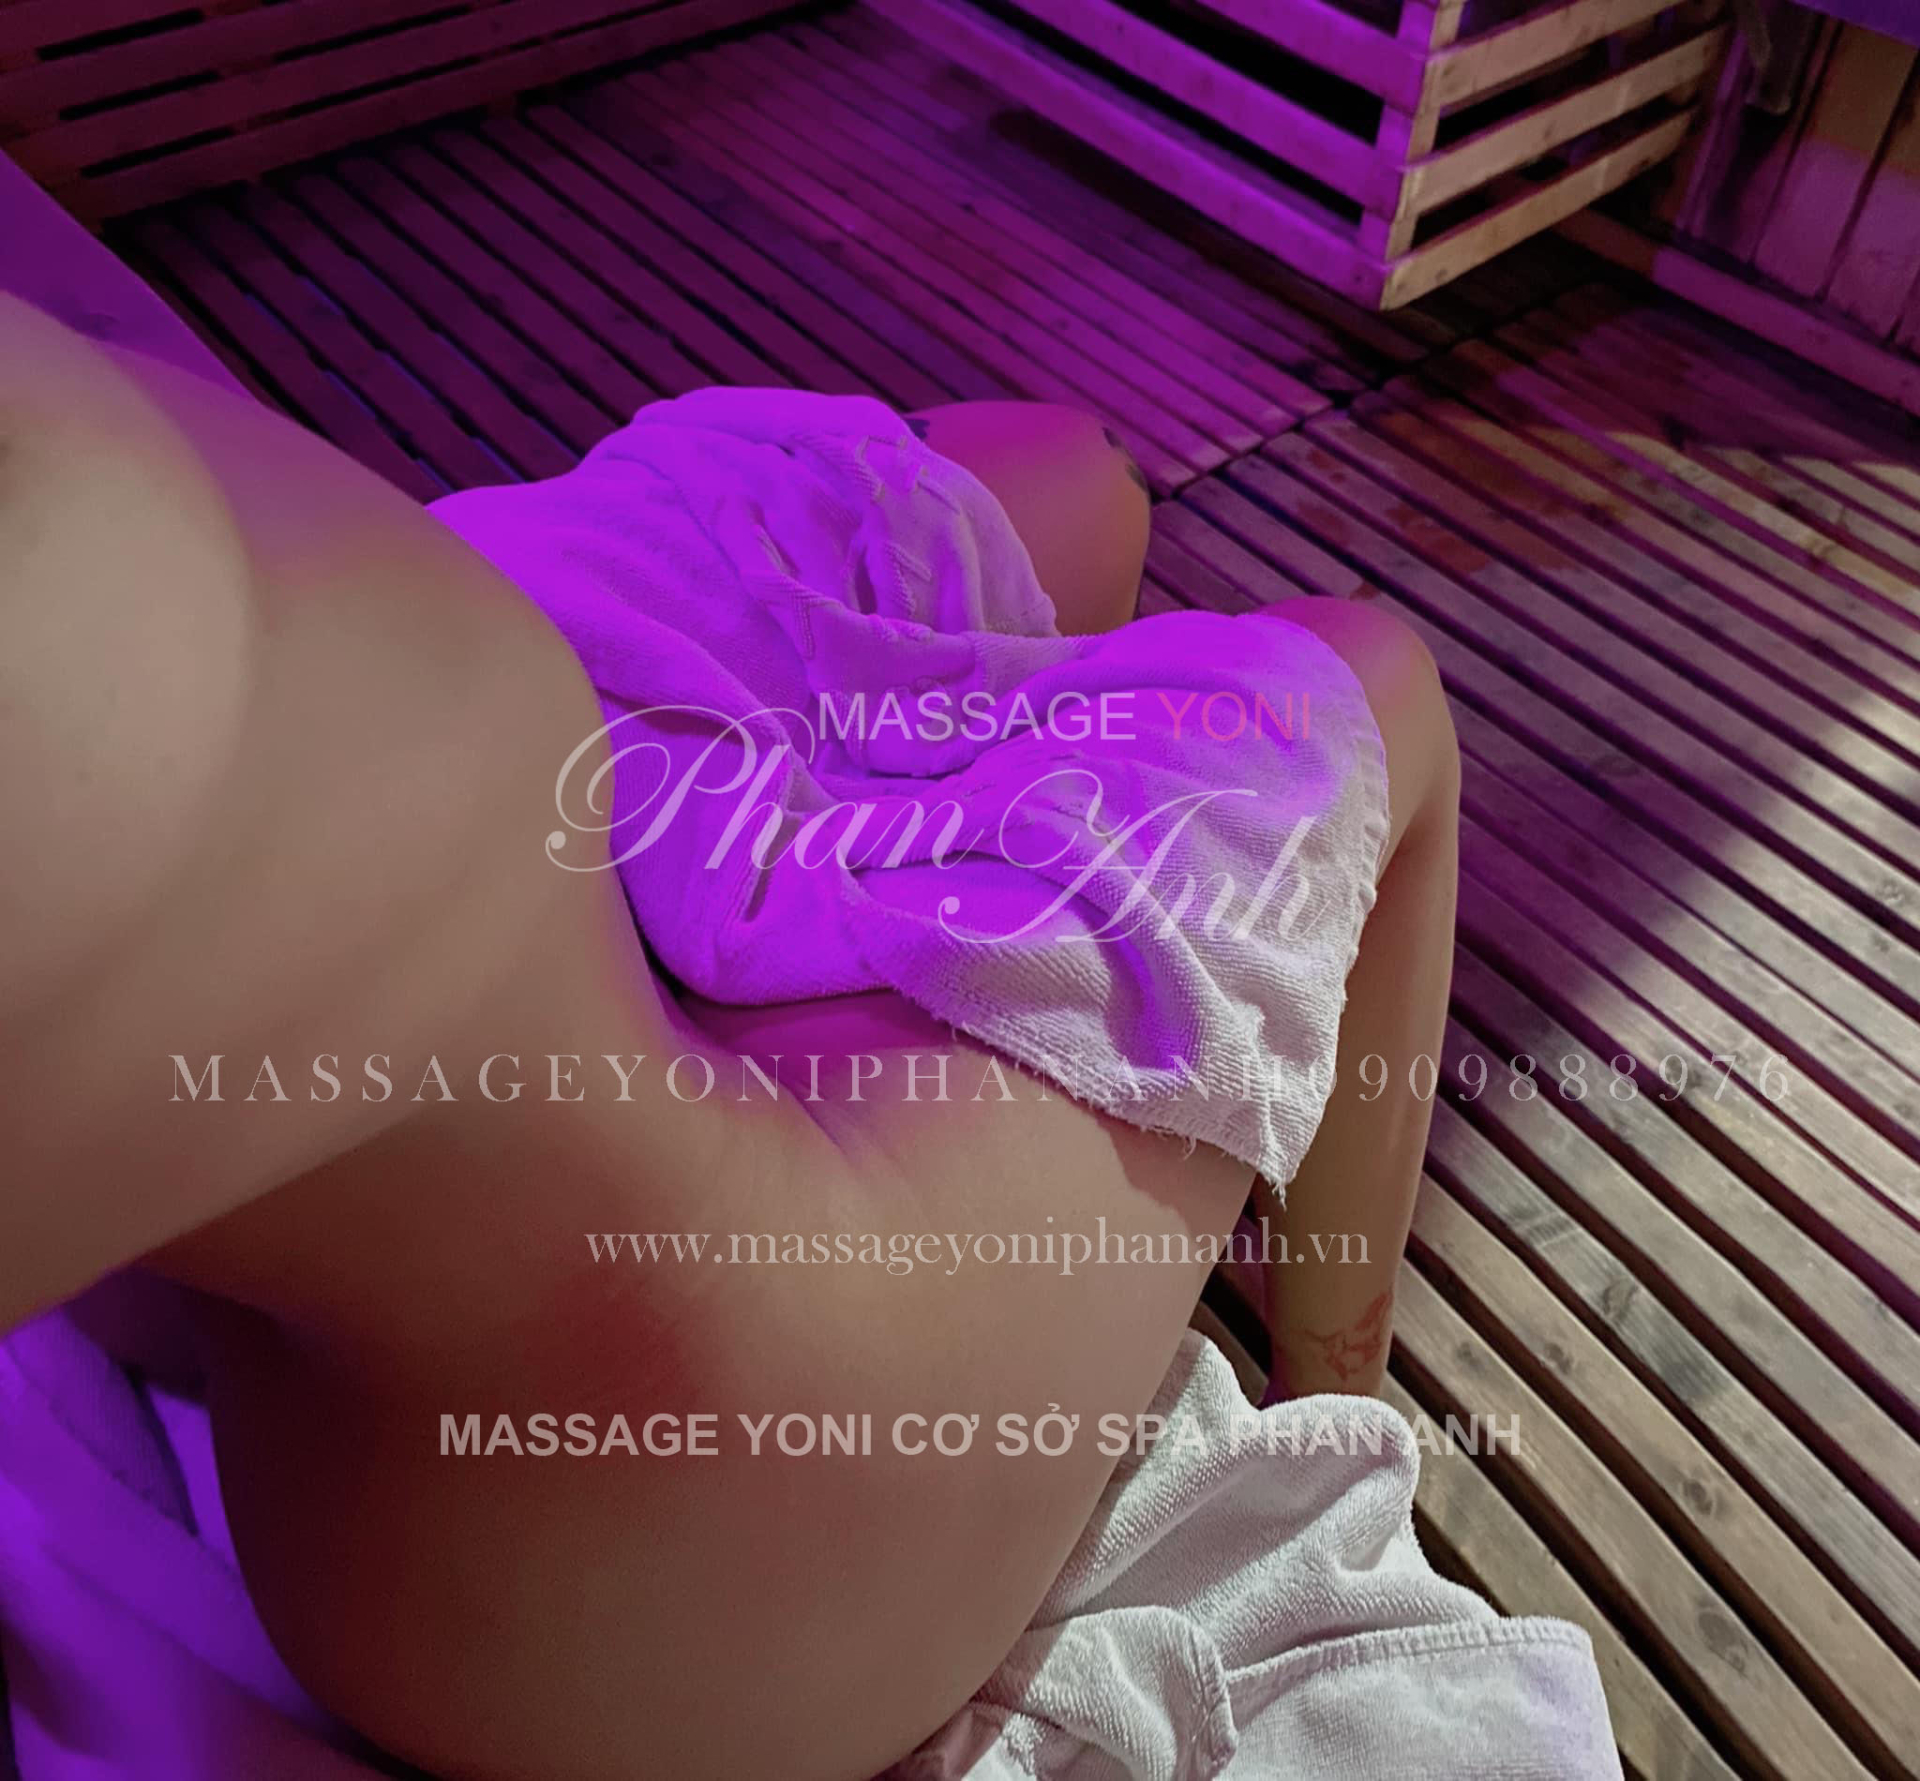 địa chỉ massage yoni cơ sở spa Phan Anh